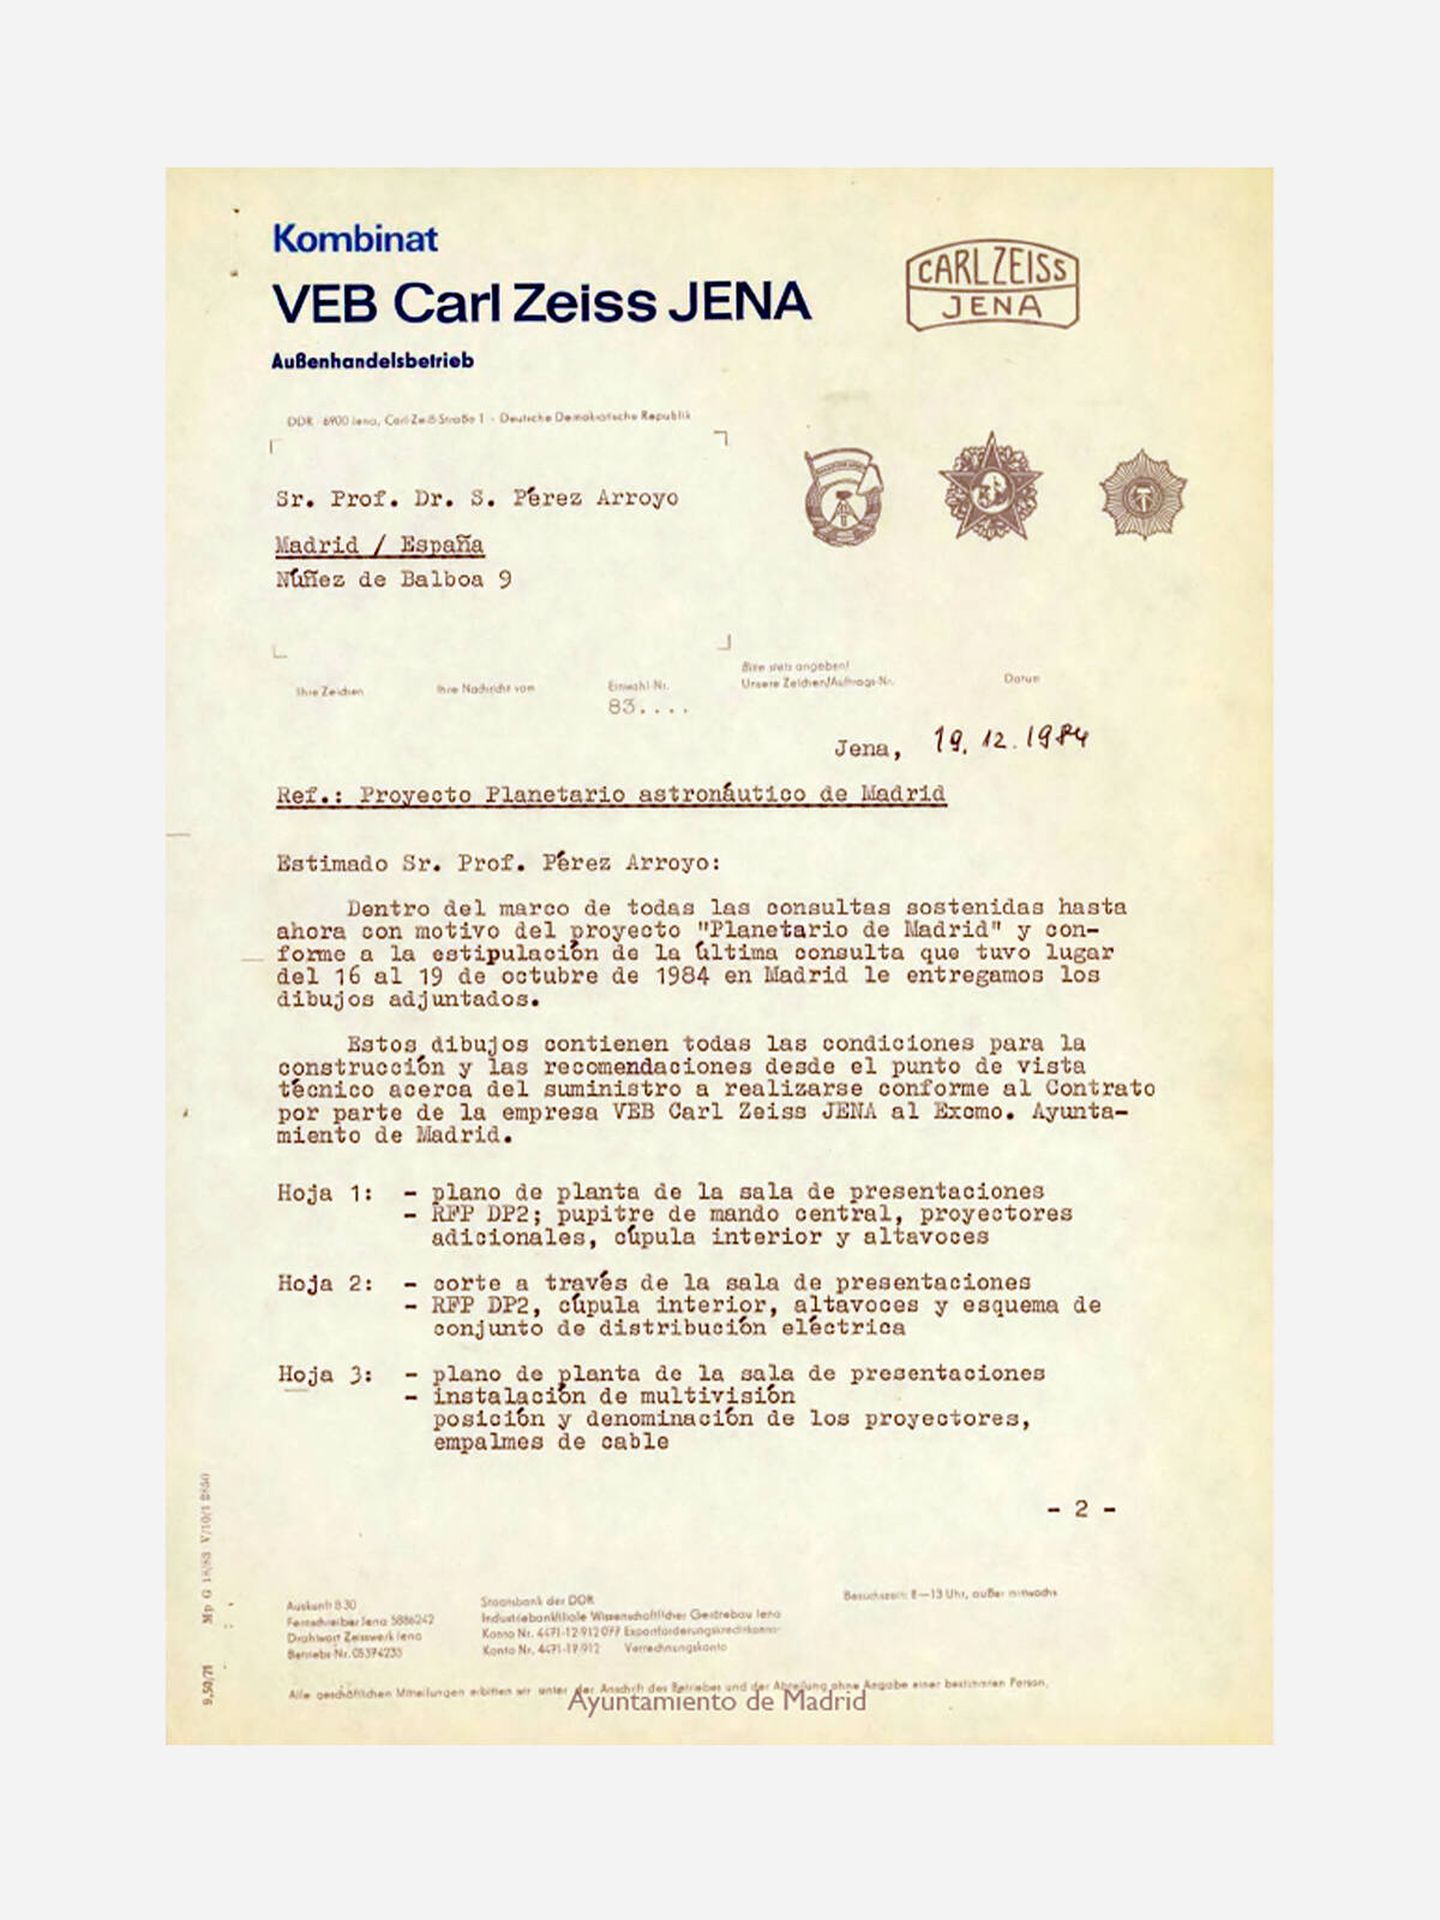 La carta con la que prendió la mecha del proyecto del Planetario. (Archivo Ayuntamiento de Madrid)